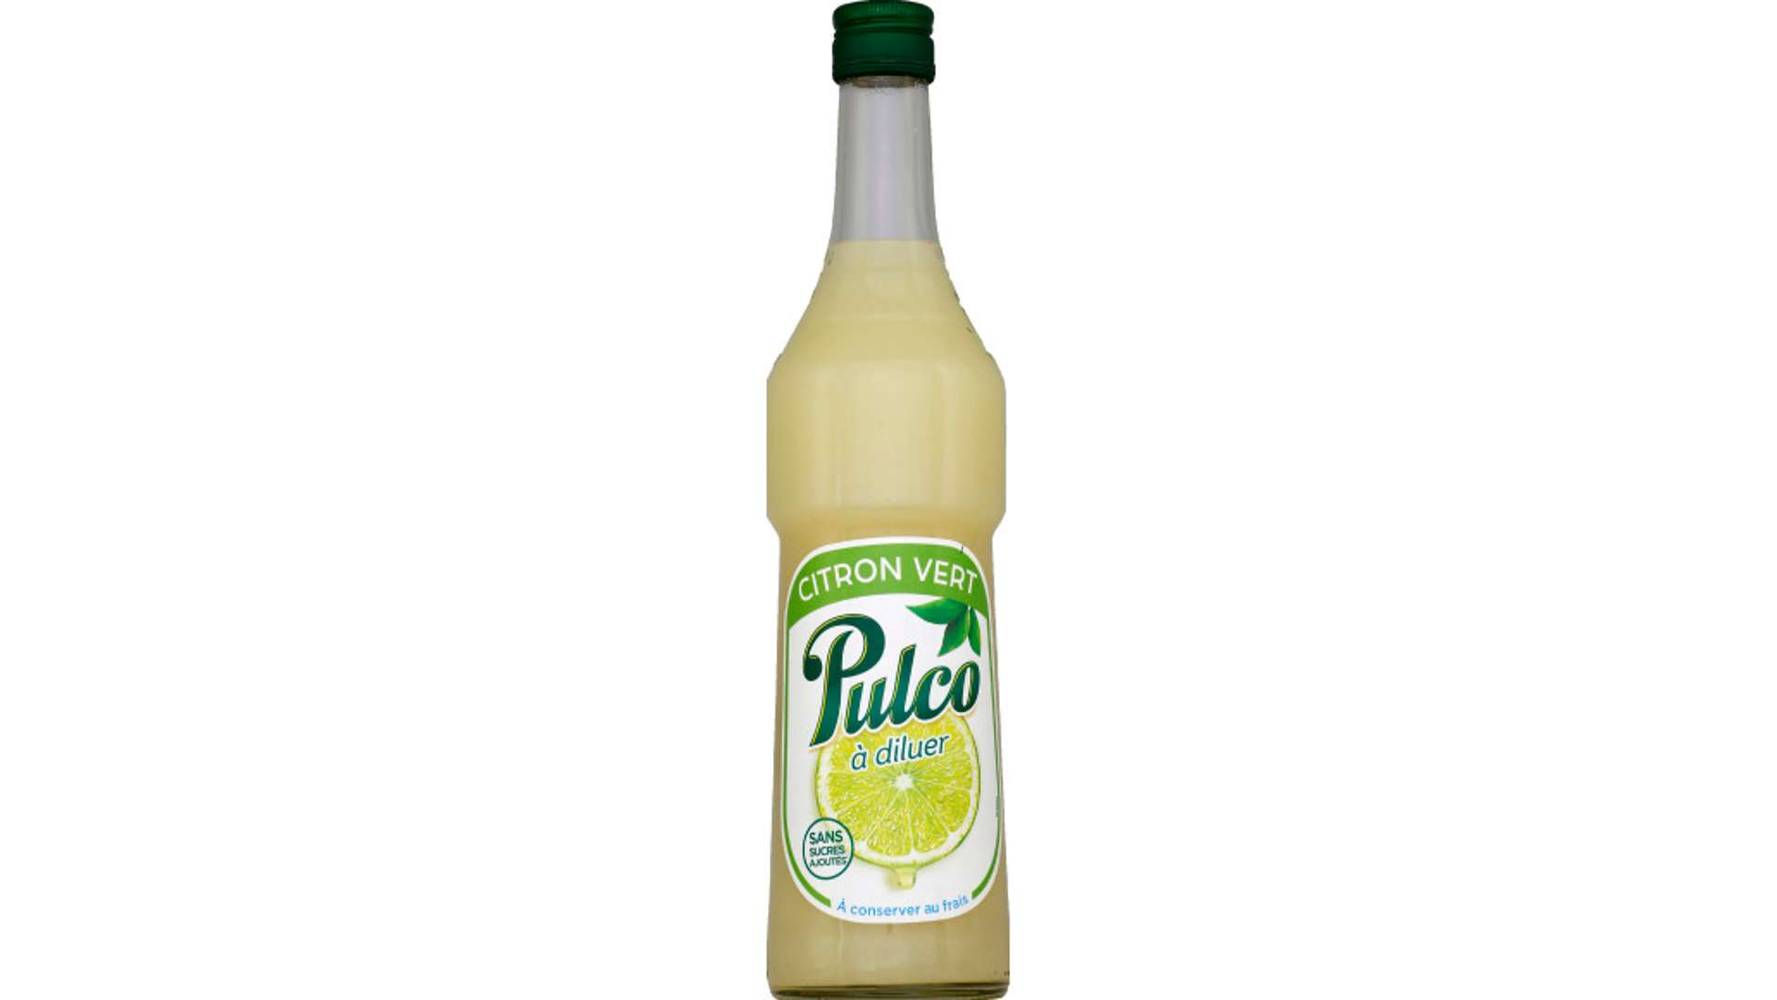 Pulco - Concentré à diluer au citron vert (700 ml)